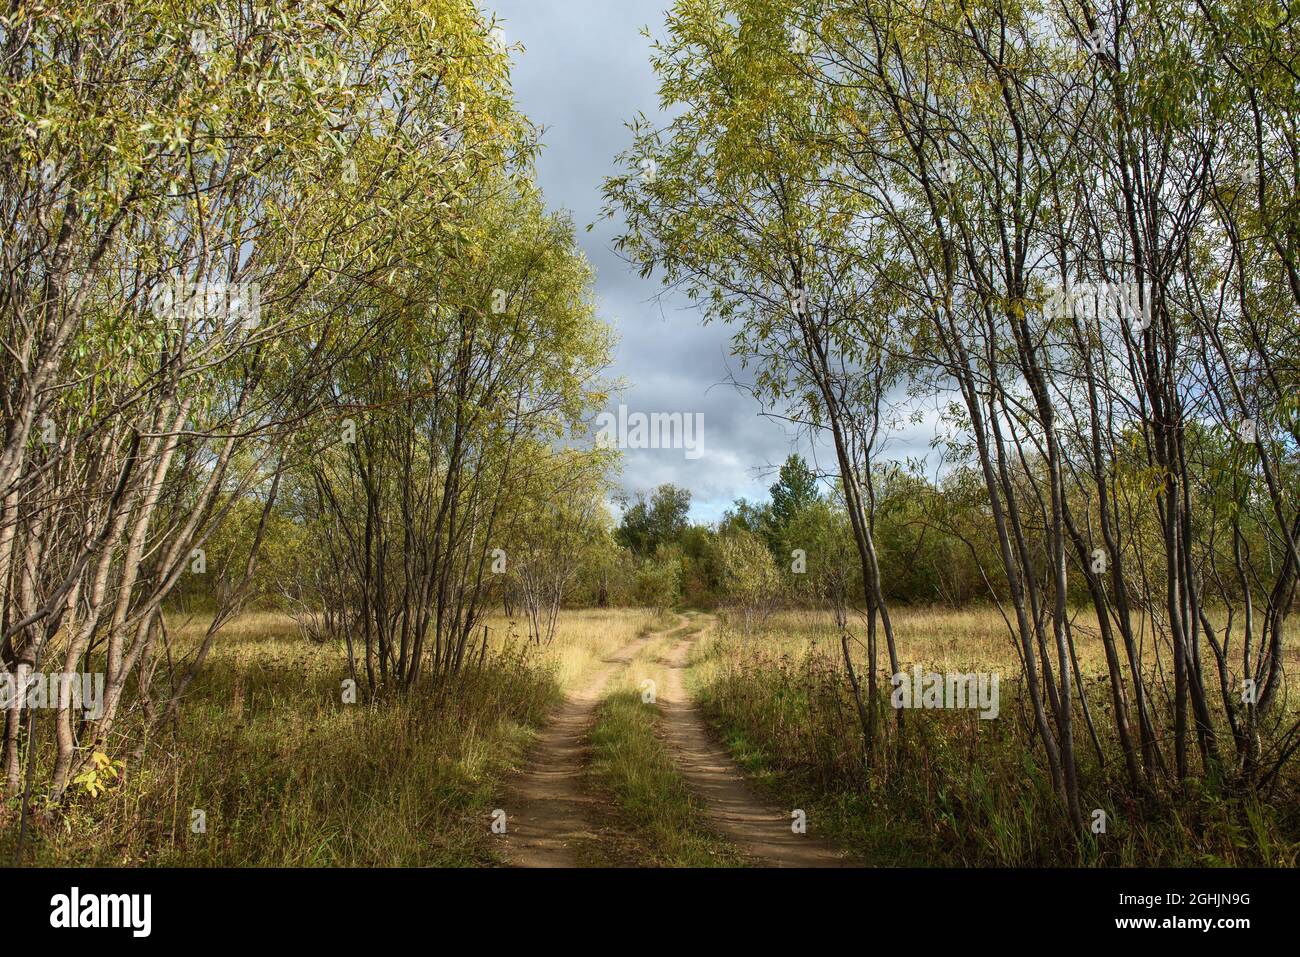 Un paysage pittoresque. Une route de campagne traversant une forêt de saules et des champs avec des herbes jaunées du froid d'automne. Banque D'Images